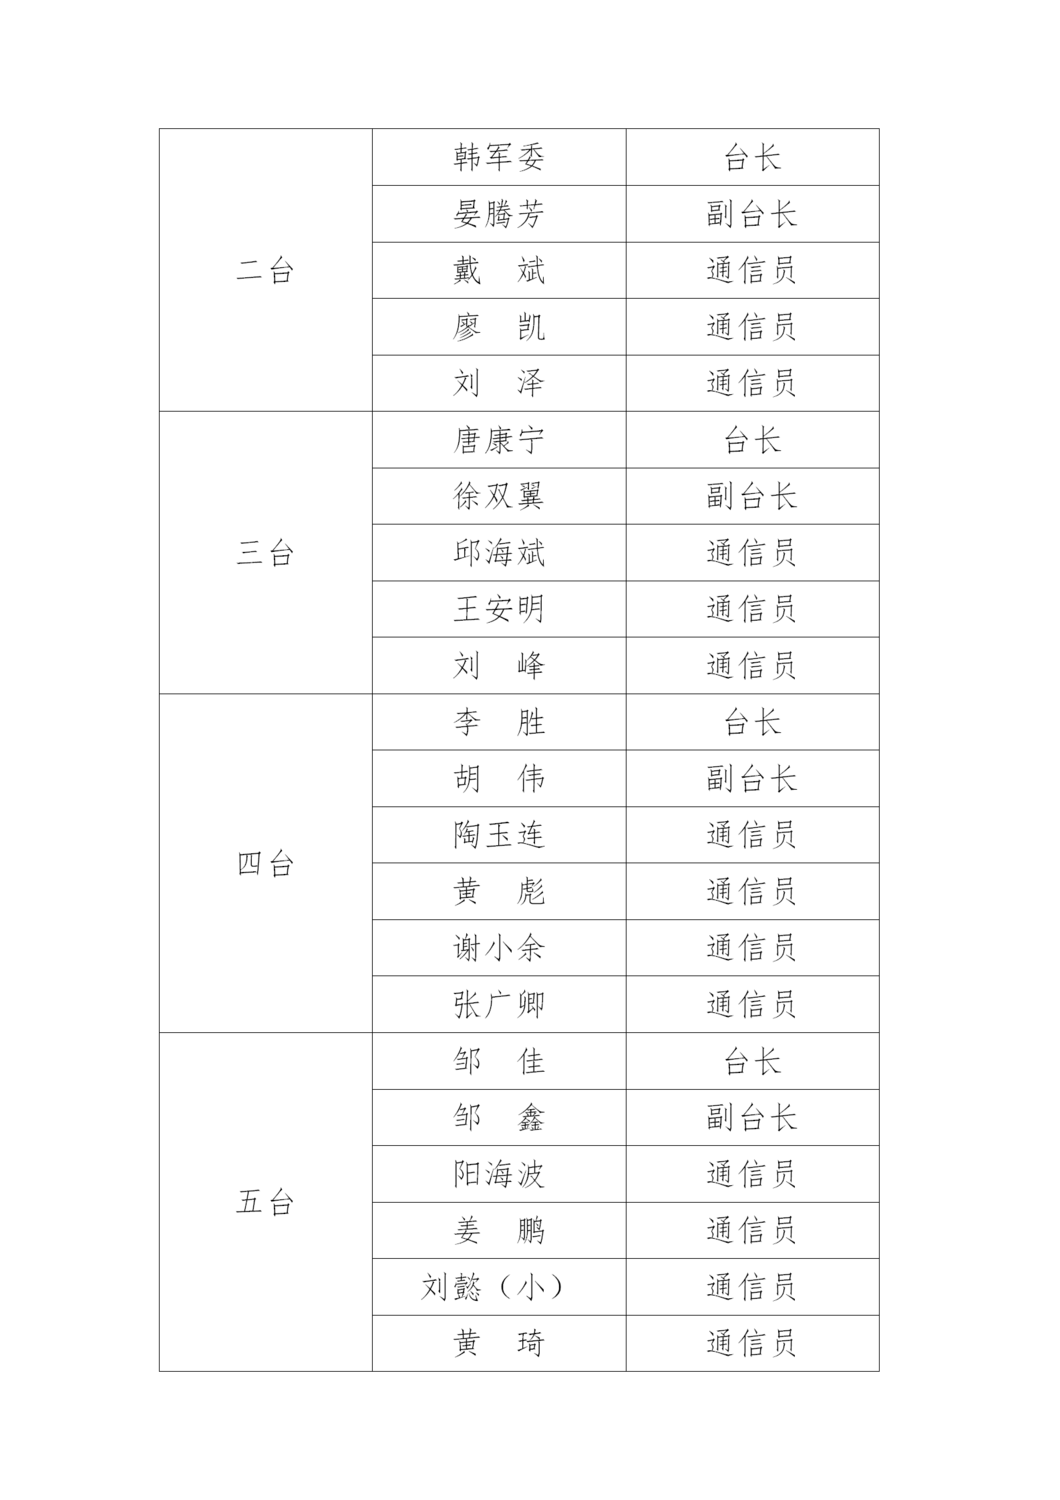 长沙应急专业救援通信保障支队成员名单公示_02.png